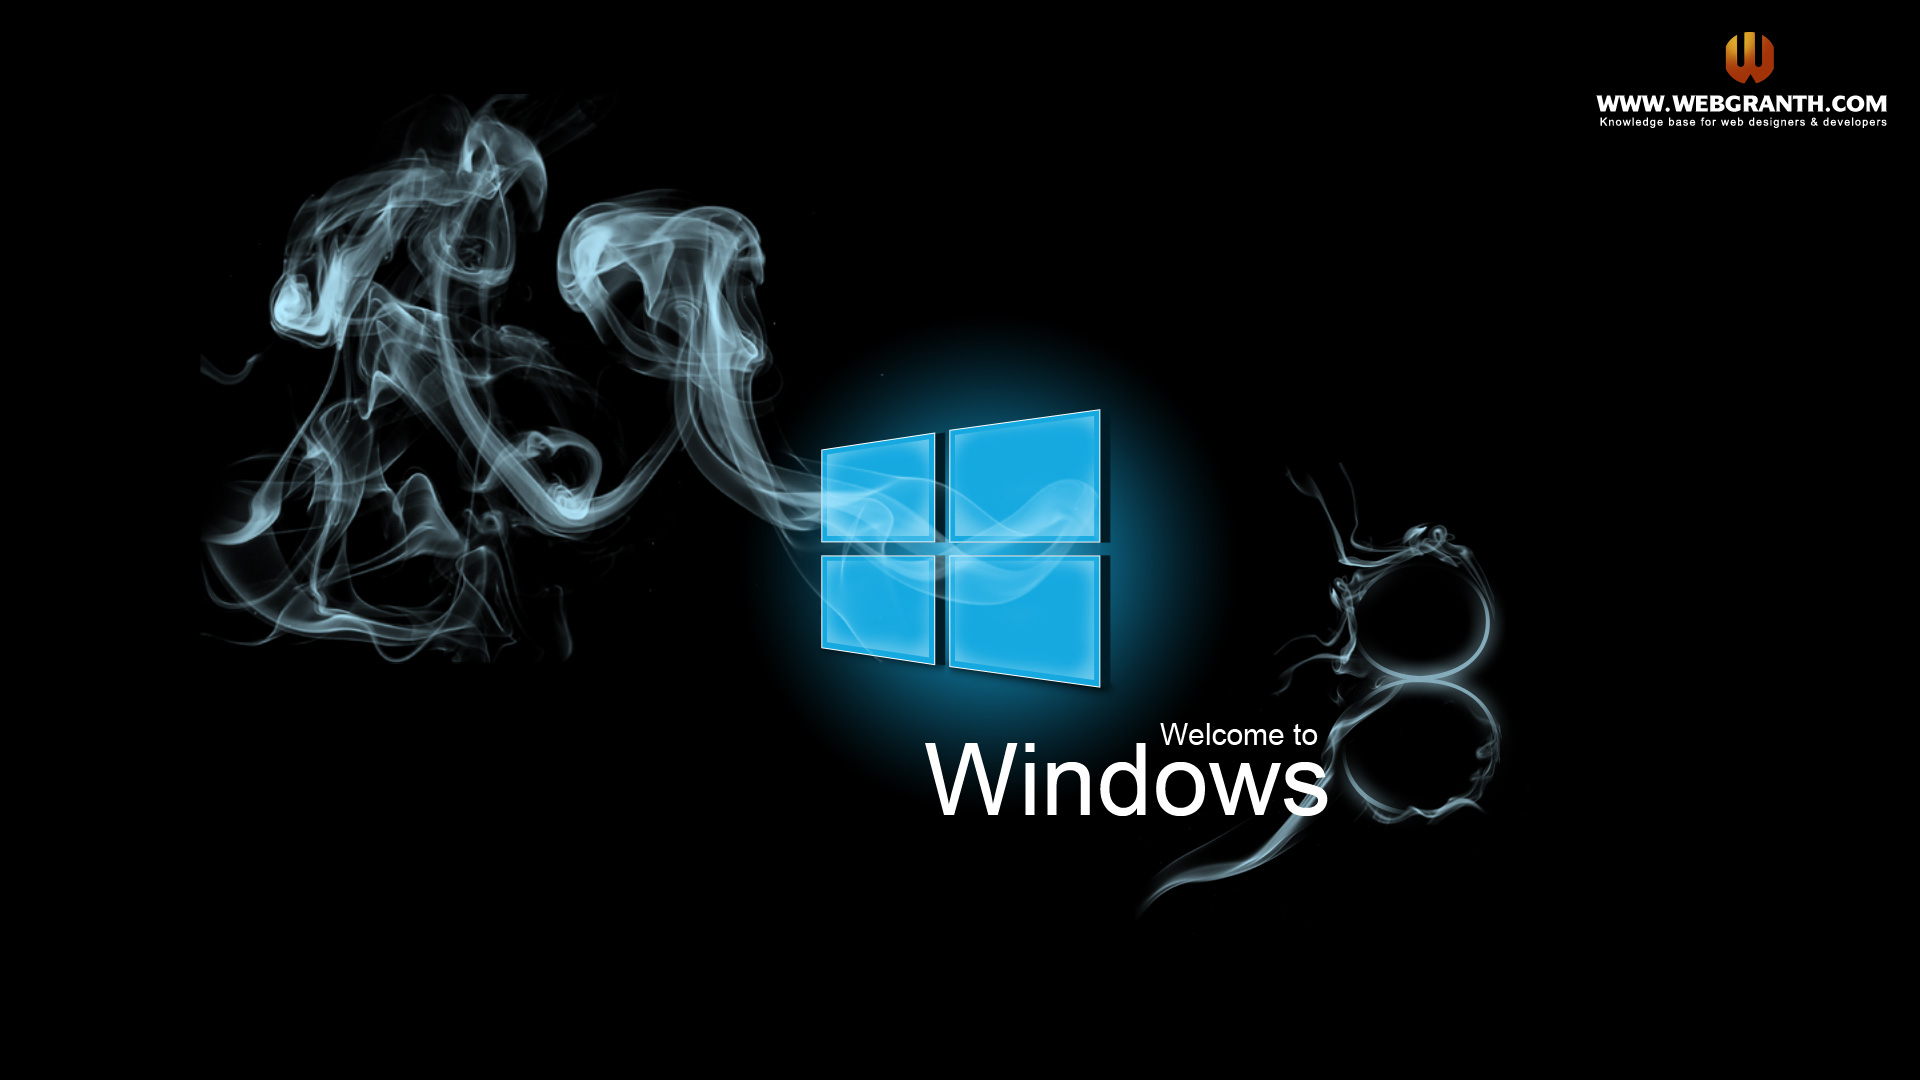 Hình nền Windows 8 độc đáo sẽ làm bạn ngạc nhiên. Hãy truy cập để xem những bức hình nền đẹp và độc đáo này.